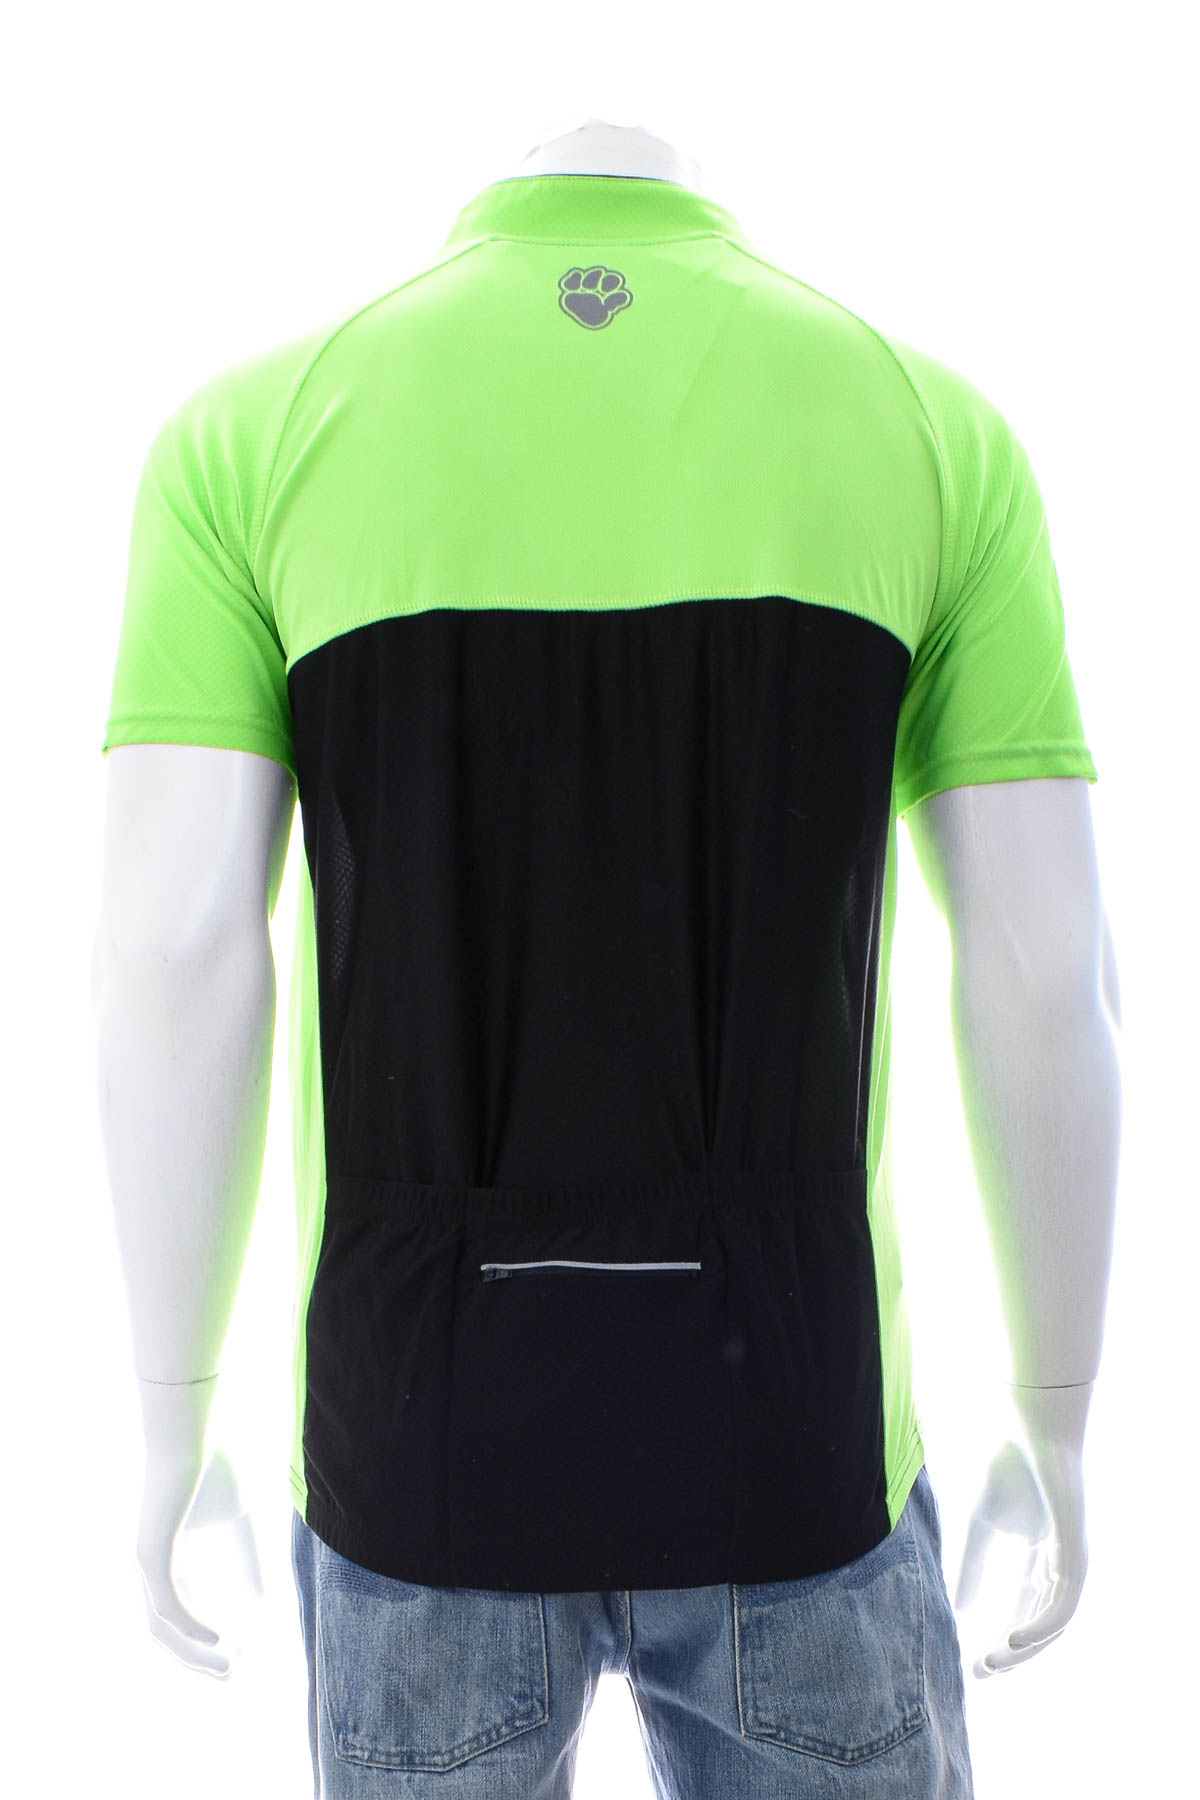 Αντρική μπλούζα Για ποδηλασία - Muddyfox - 1